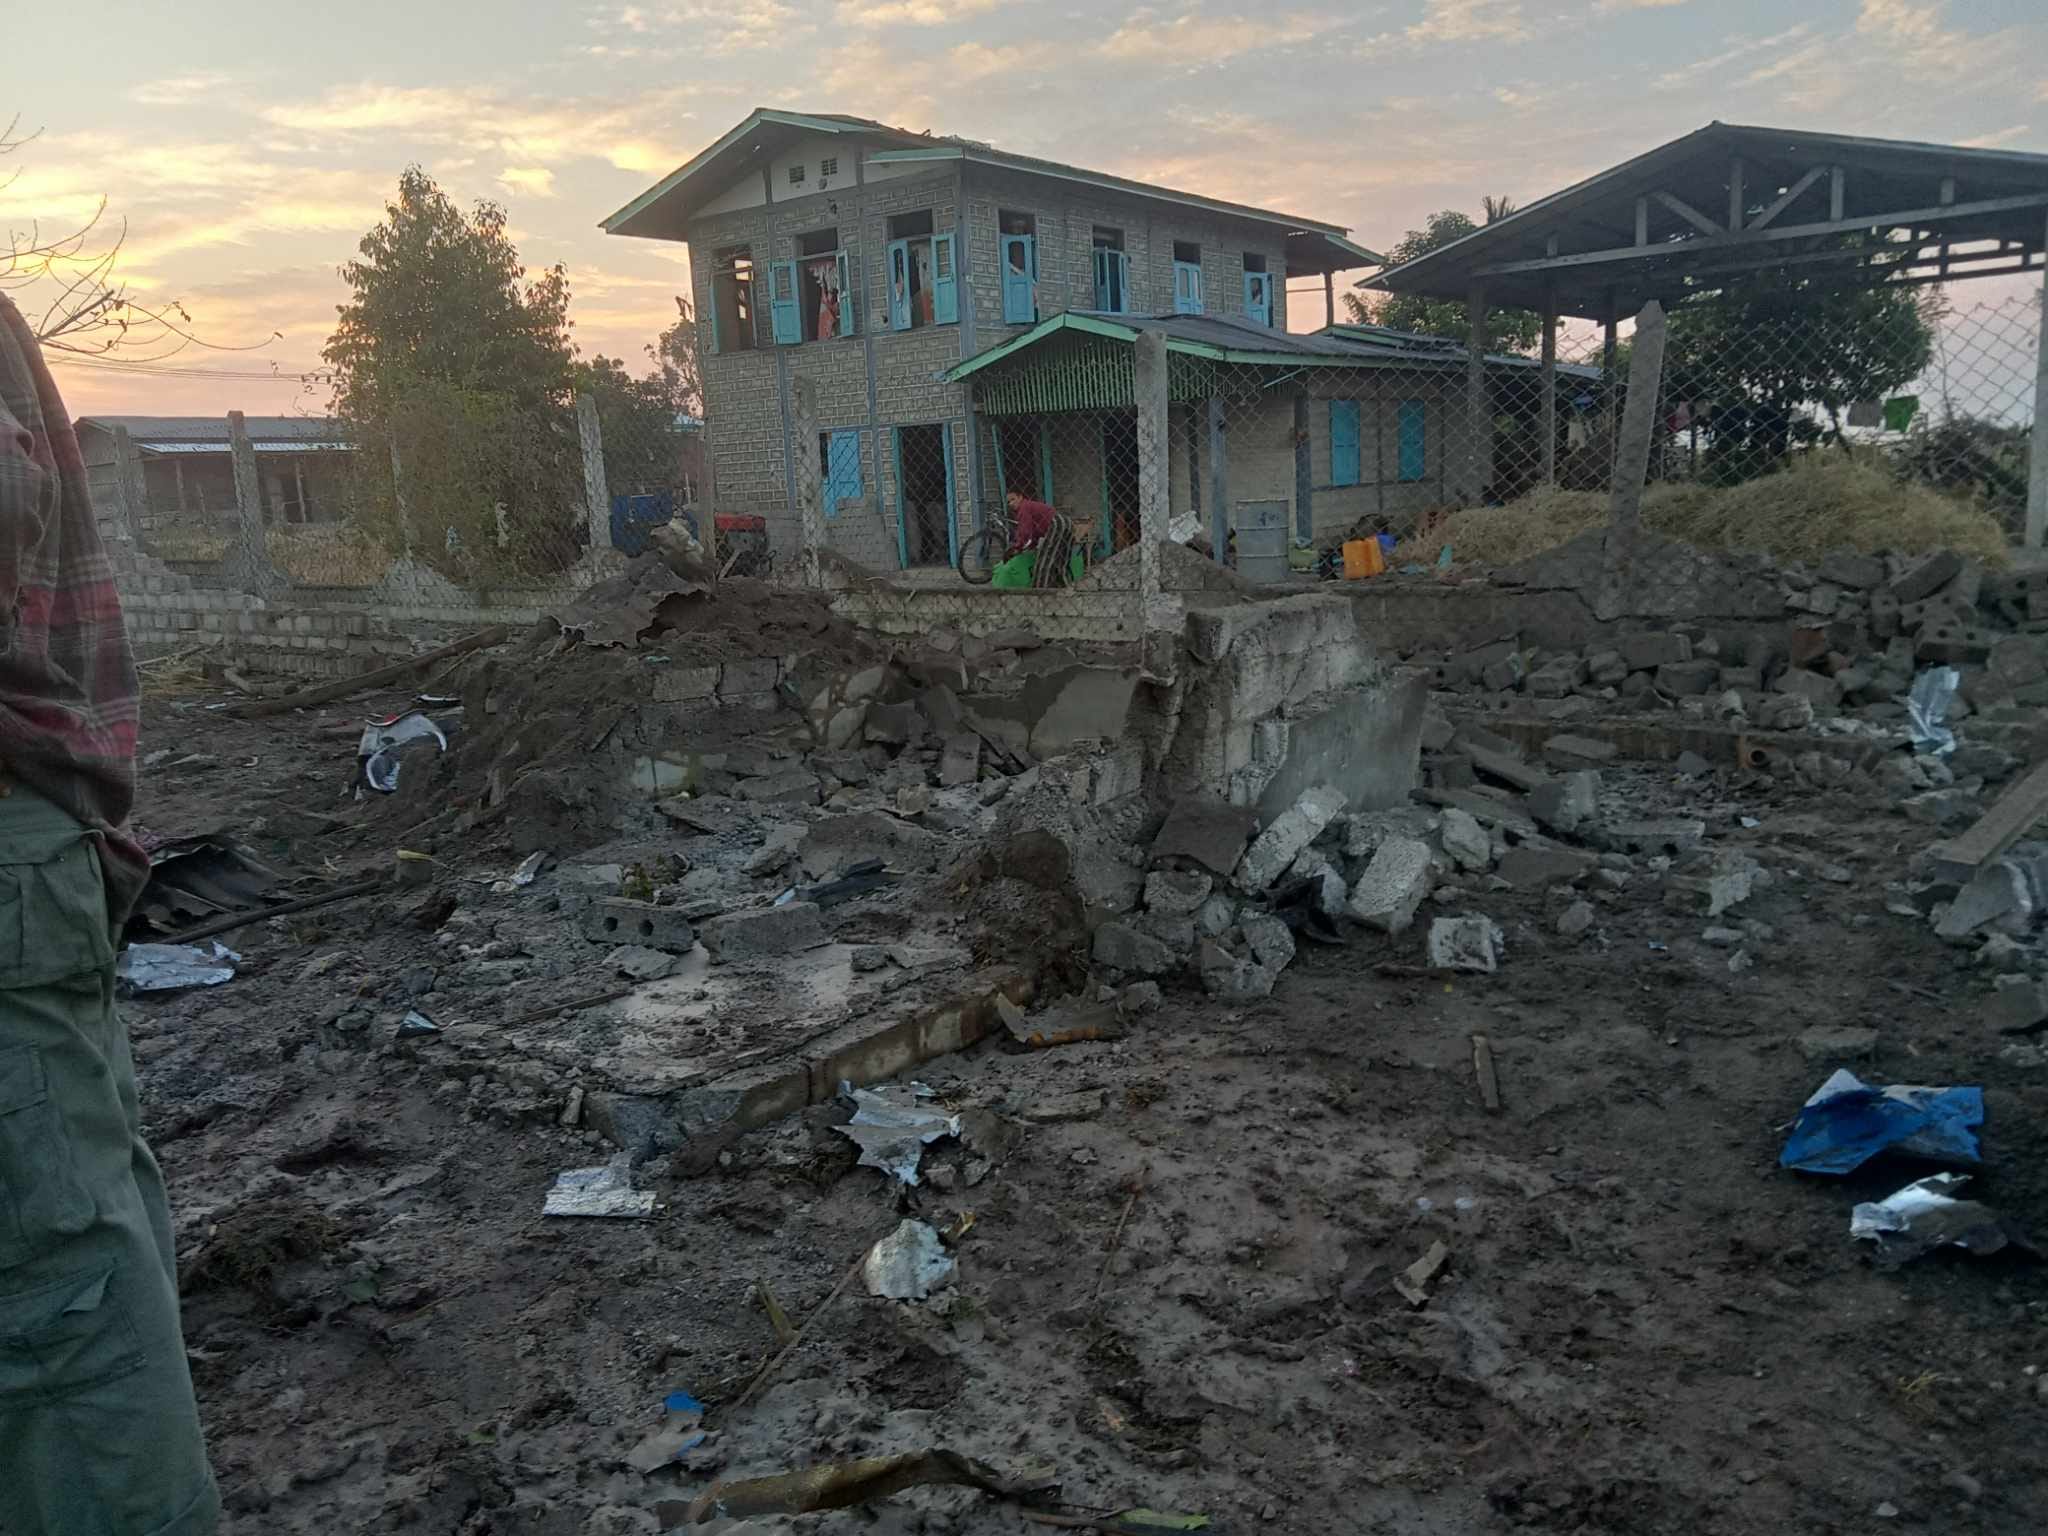 တိုက်ပွဲမဖြစ်တဲ့ ပင်လောင်းဘက်ကို ဗုံးကြဲလို့ ဆေးခန်းနဲ့ လူနေအိမ်တွေ ပျက်စီး